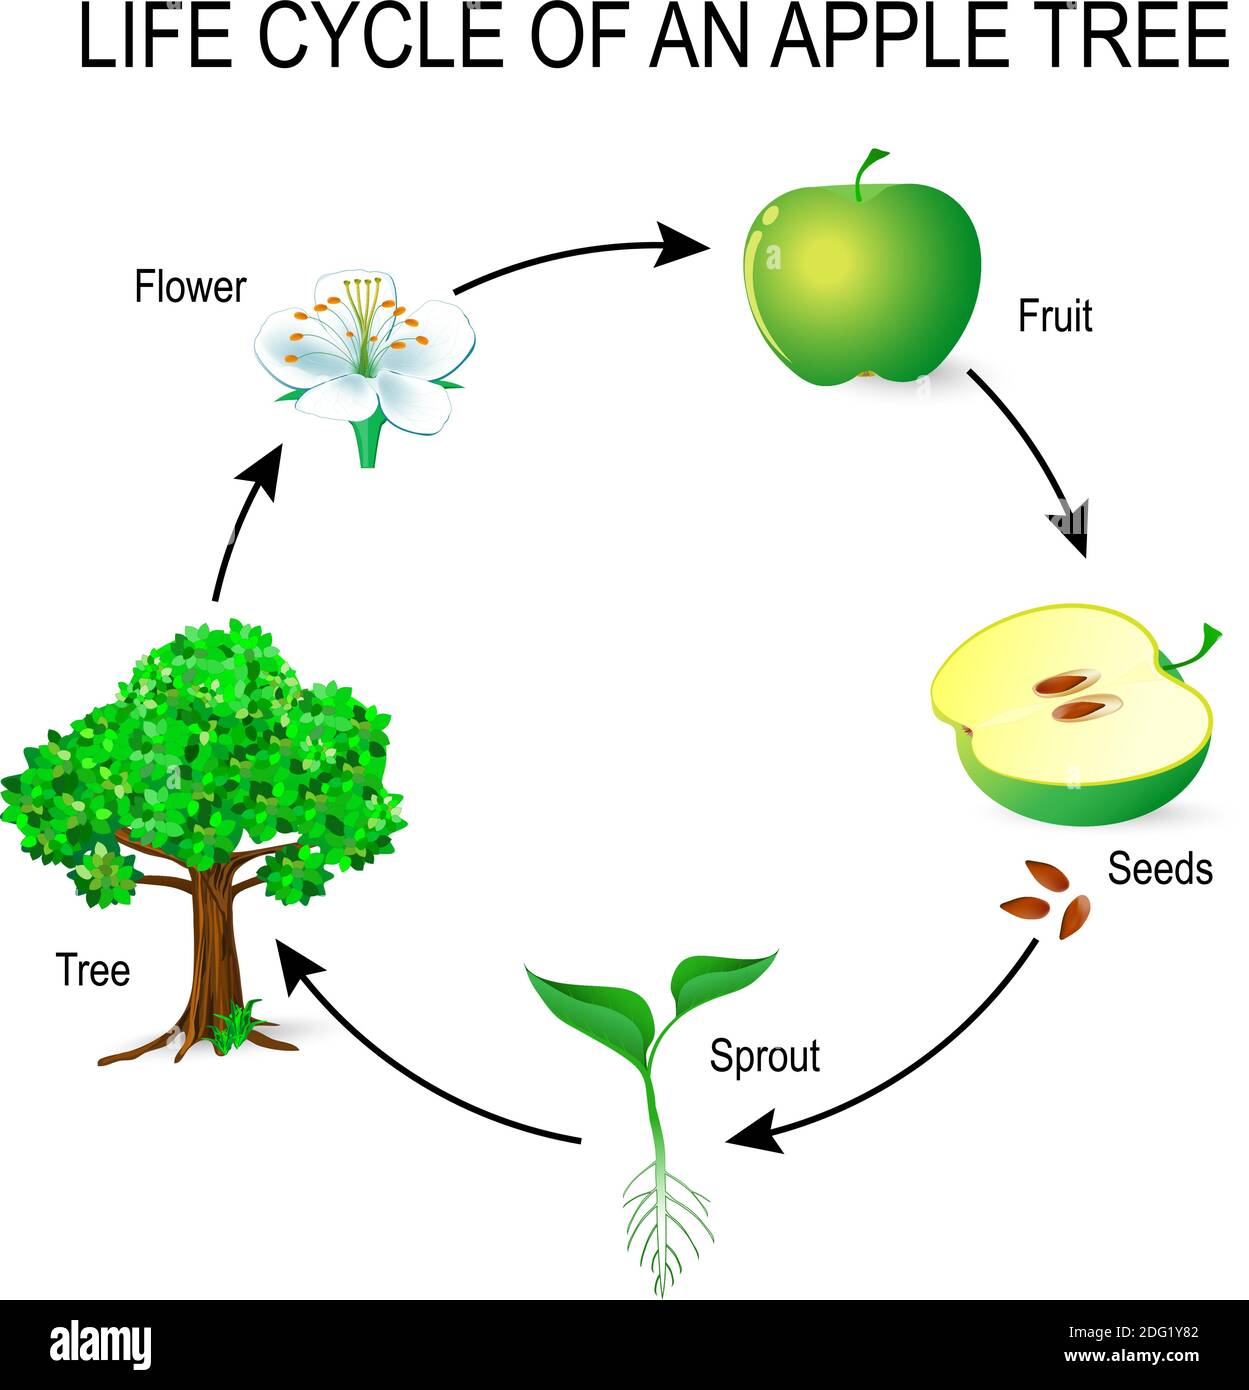 ciclo di vita di un albero di mela. fiore, semi, frutta, germoglio, seme e albero. L'esempio più comune di germinazione da un seme e ciclo di vita di albero. Illustrazione Vettoriale